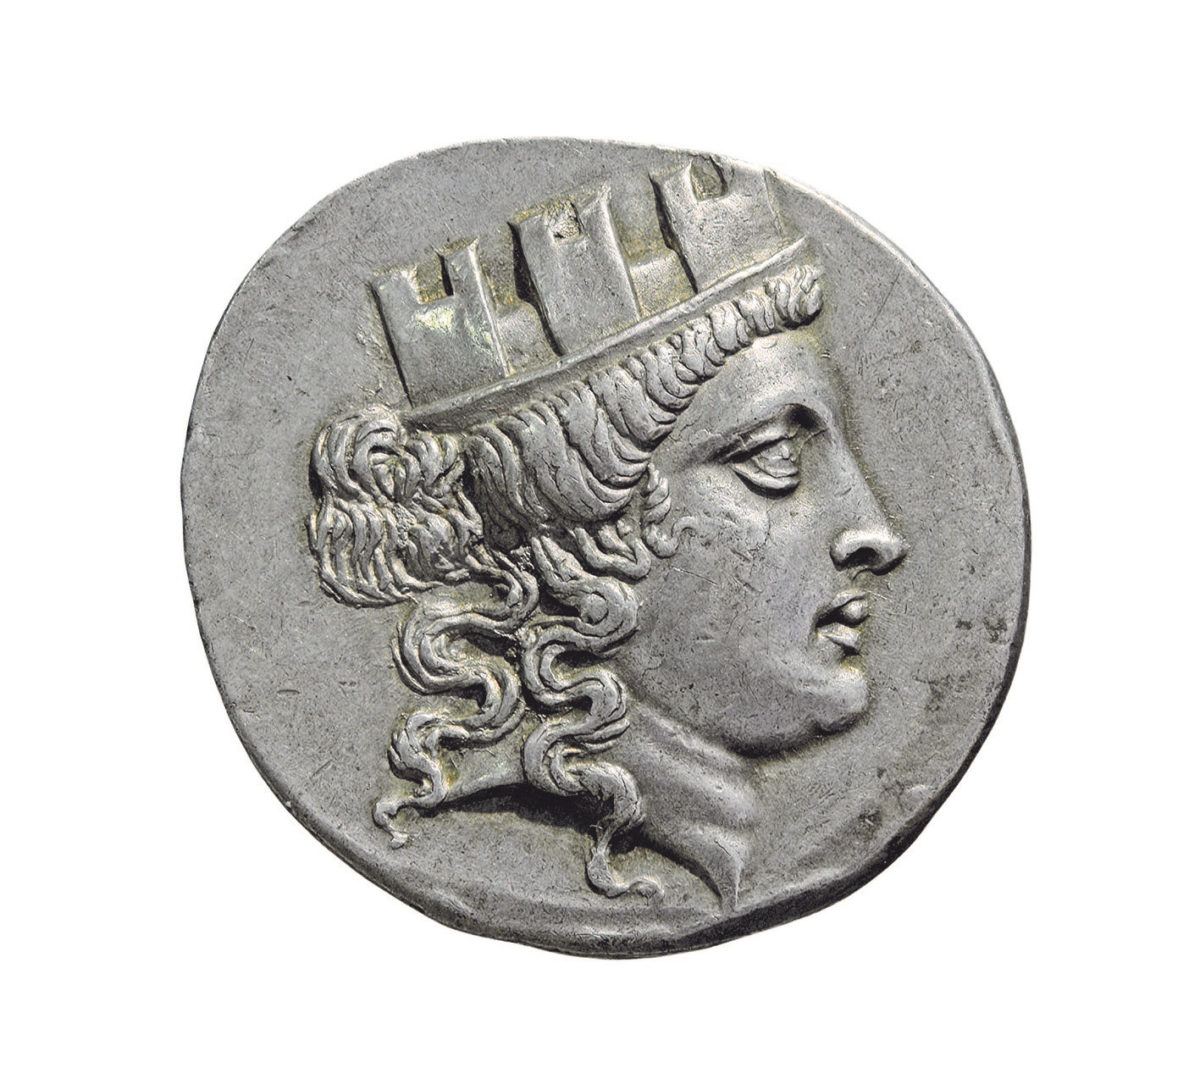 Αργυρό τετράδραχμο Σμύρνης με γυναικεία κεφαλή που φορά τειχόμορφο στέμμα (Τύχη πόλεως), μετά το 165 π.Χ. © Αθήνα, Νομισματική Συλλογή Alpha Bank (φωτ.: Π. Μαγουλάς).